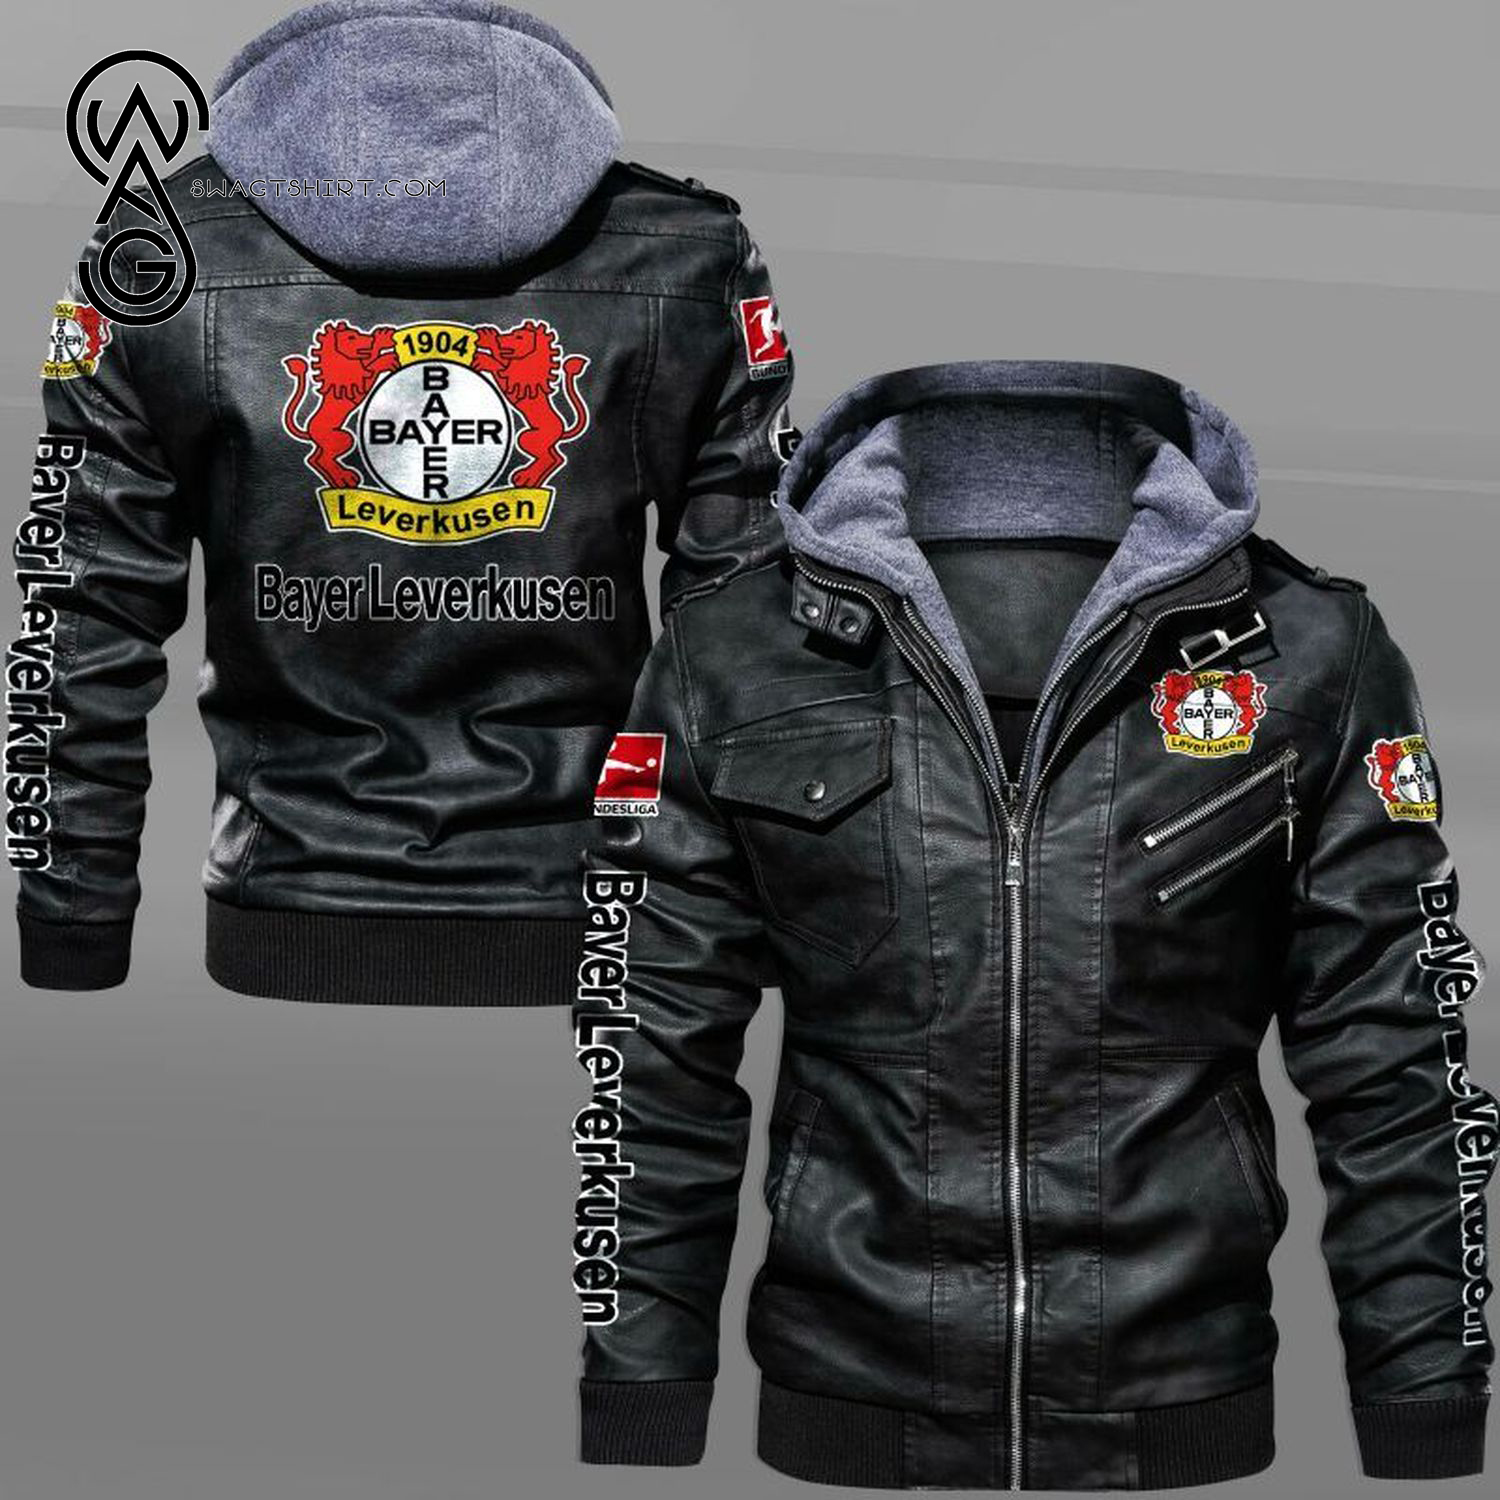 Bayer 04 Leverkusen Football Club Leather Jacket